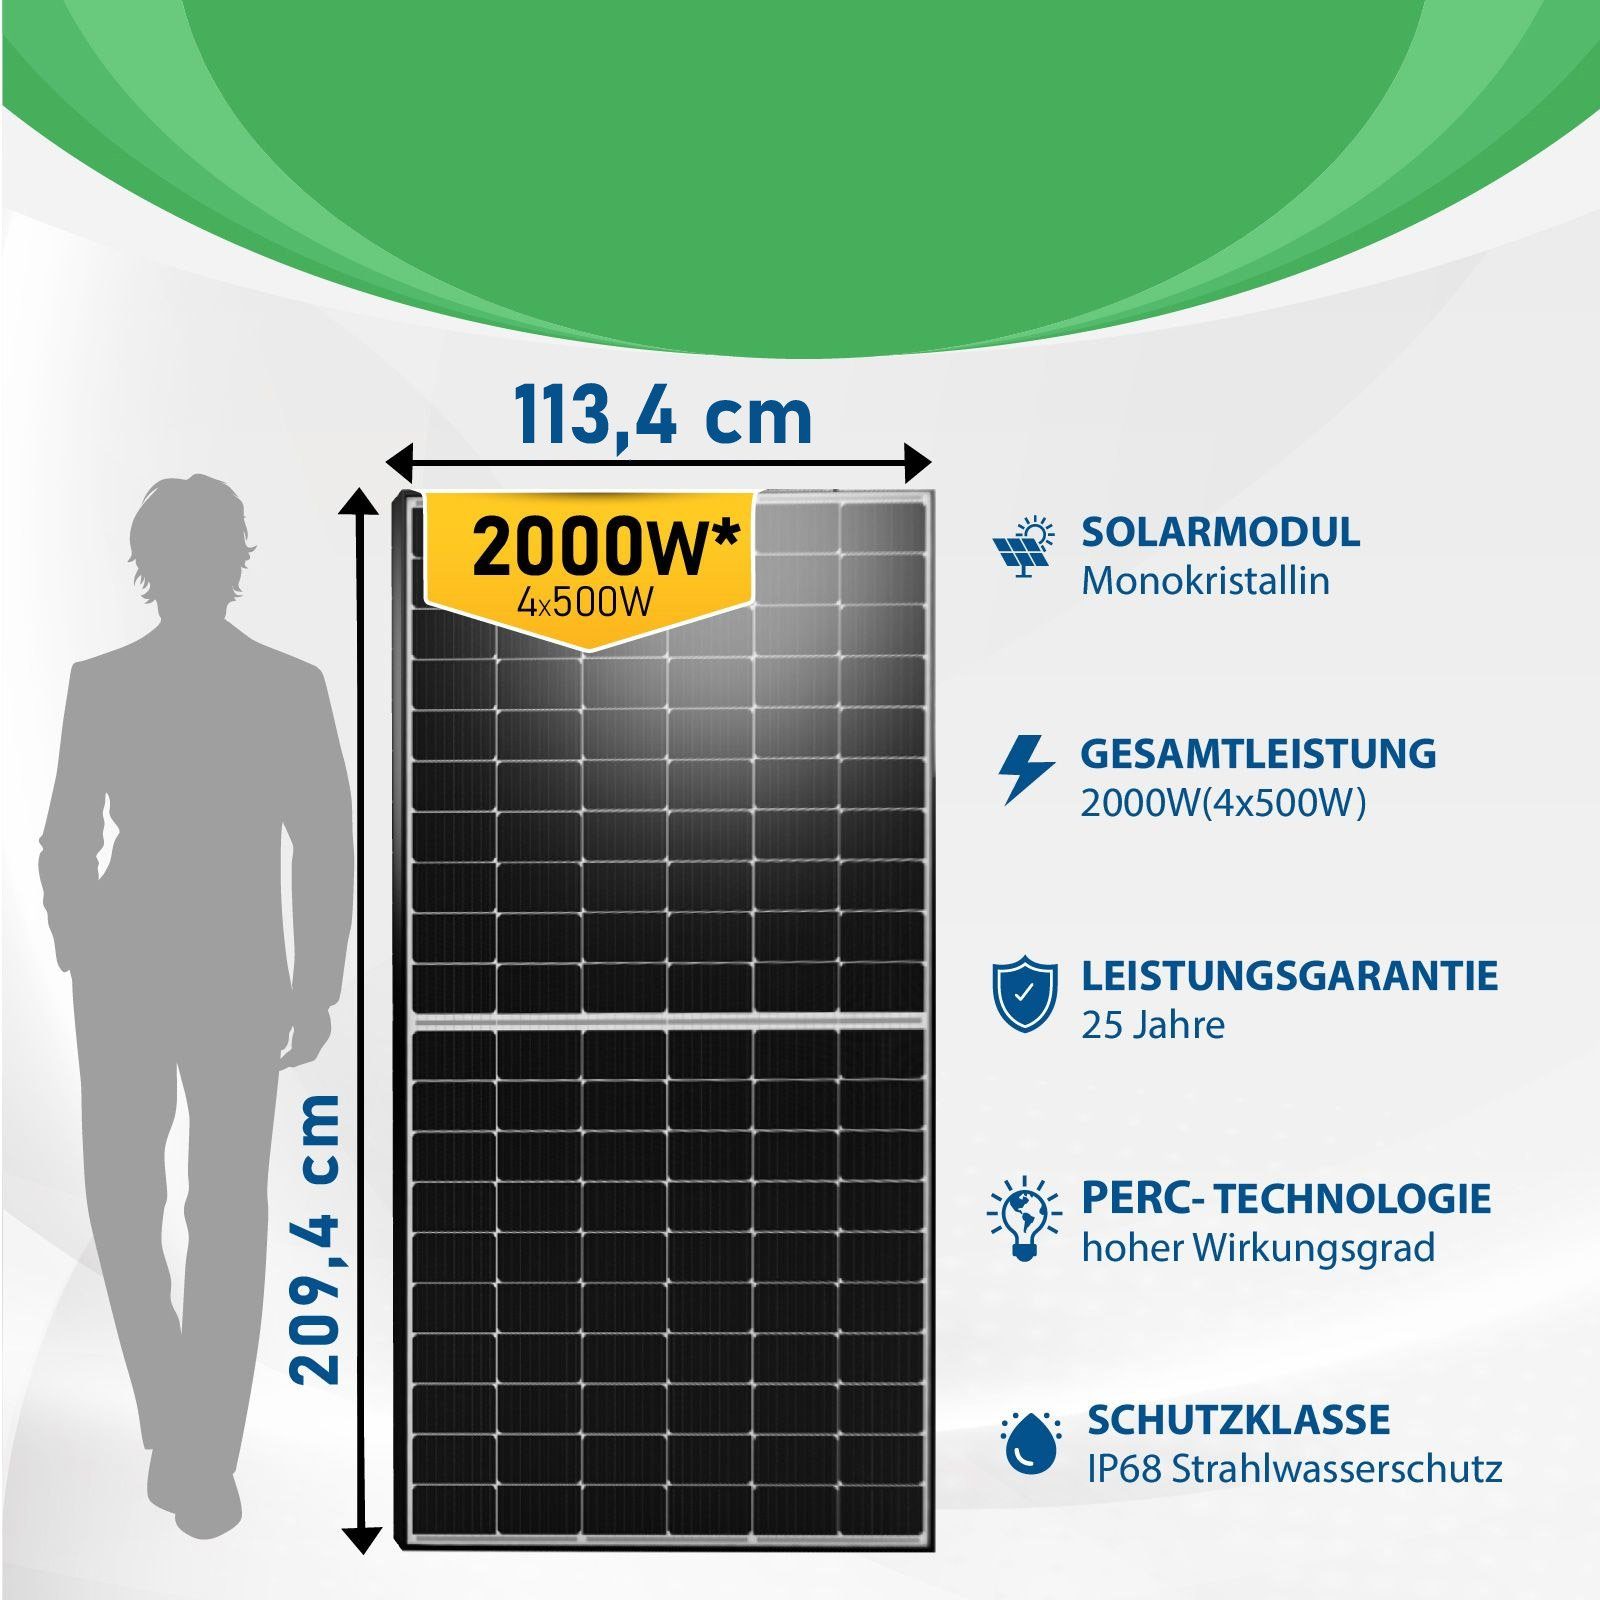 Balkonkraftwerk, DTU-WLite-S) Photovoltaik (4x Montage Campergold Solaranlage Balkongeländer 500W) (Mit Eckig, 2000W Wechselrichter, Hoymiles HMS-1600-4T